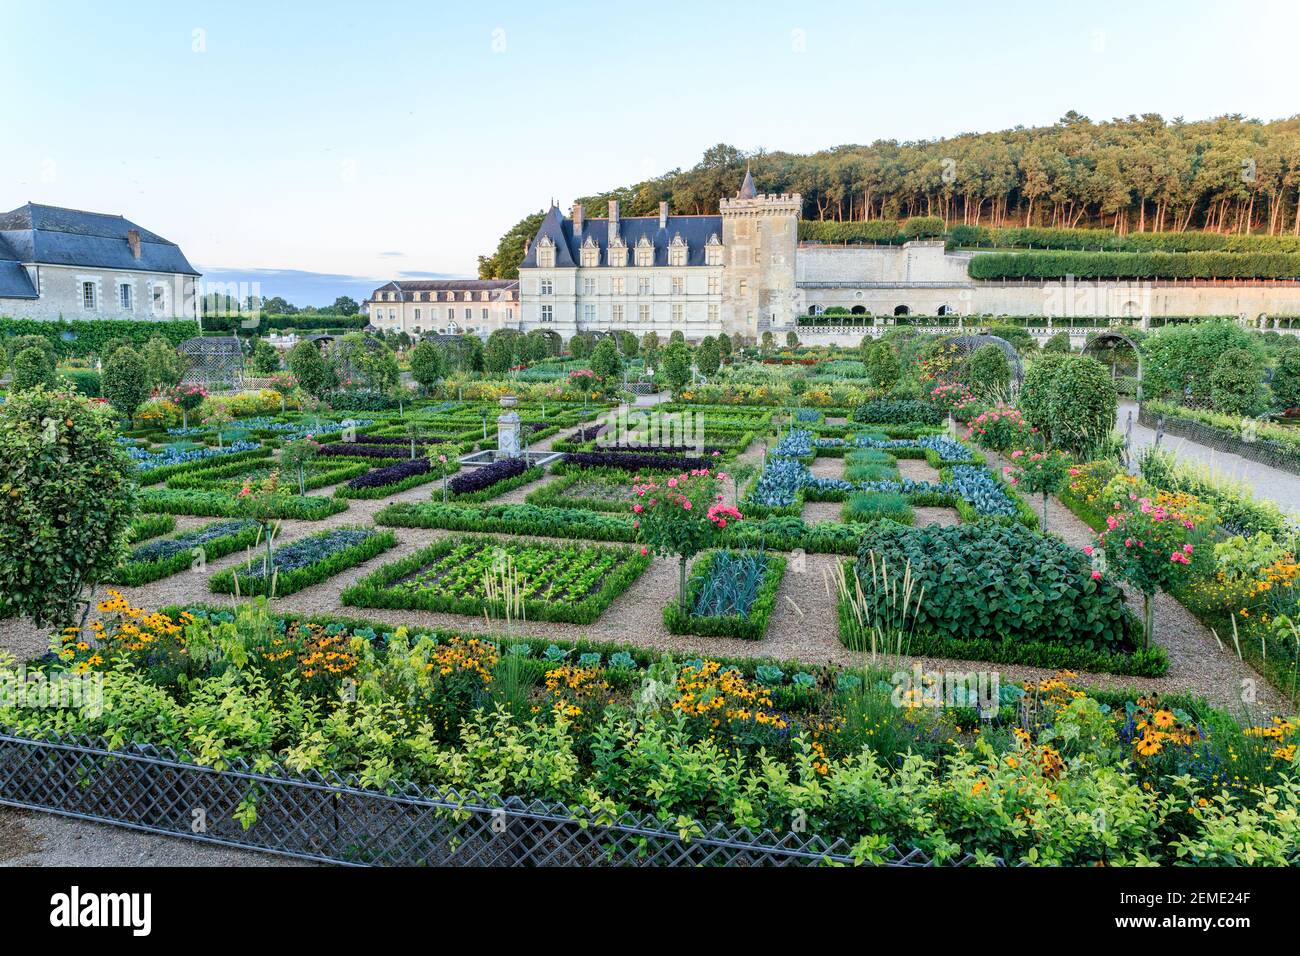 France, Indre et Loire, vallée de la Loire classée au patrimoine mondial de l'UNESCO, le château et les jardins de Villandry, le Potager et le château de l'ev Banque D'Images